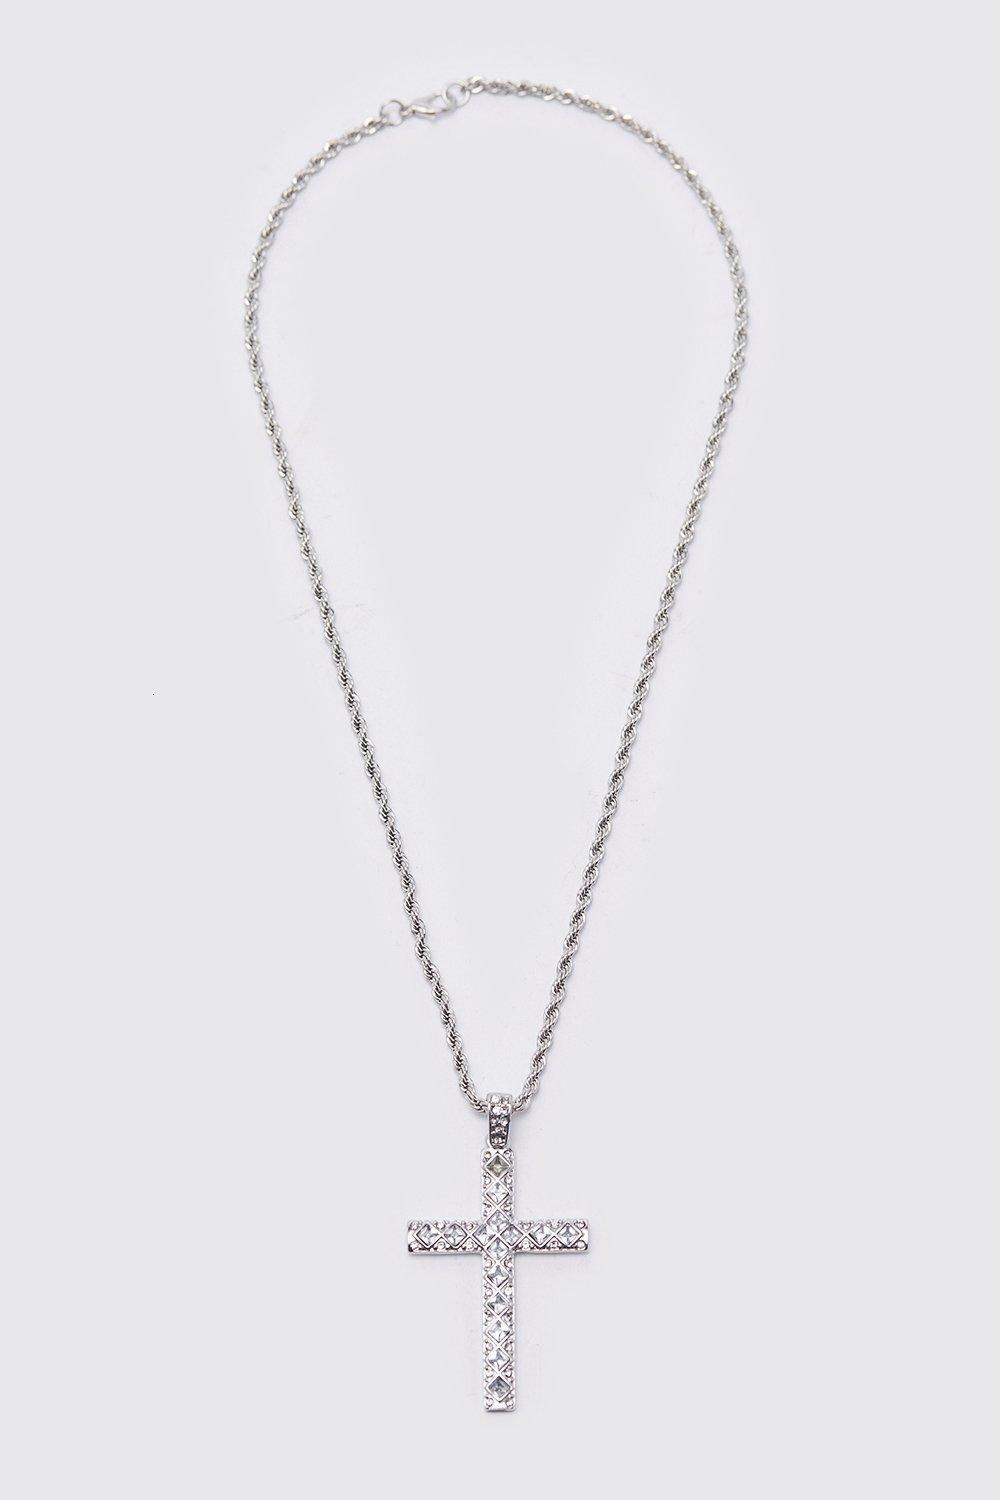 collier en chaîne argentée avec pendentif croix à strass homme - one size, argent